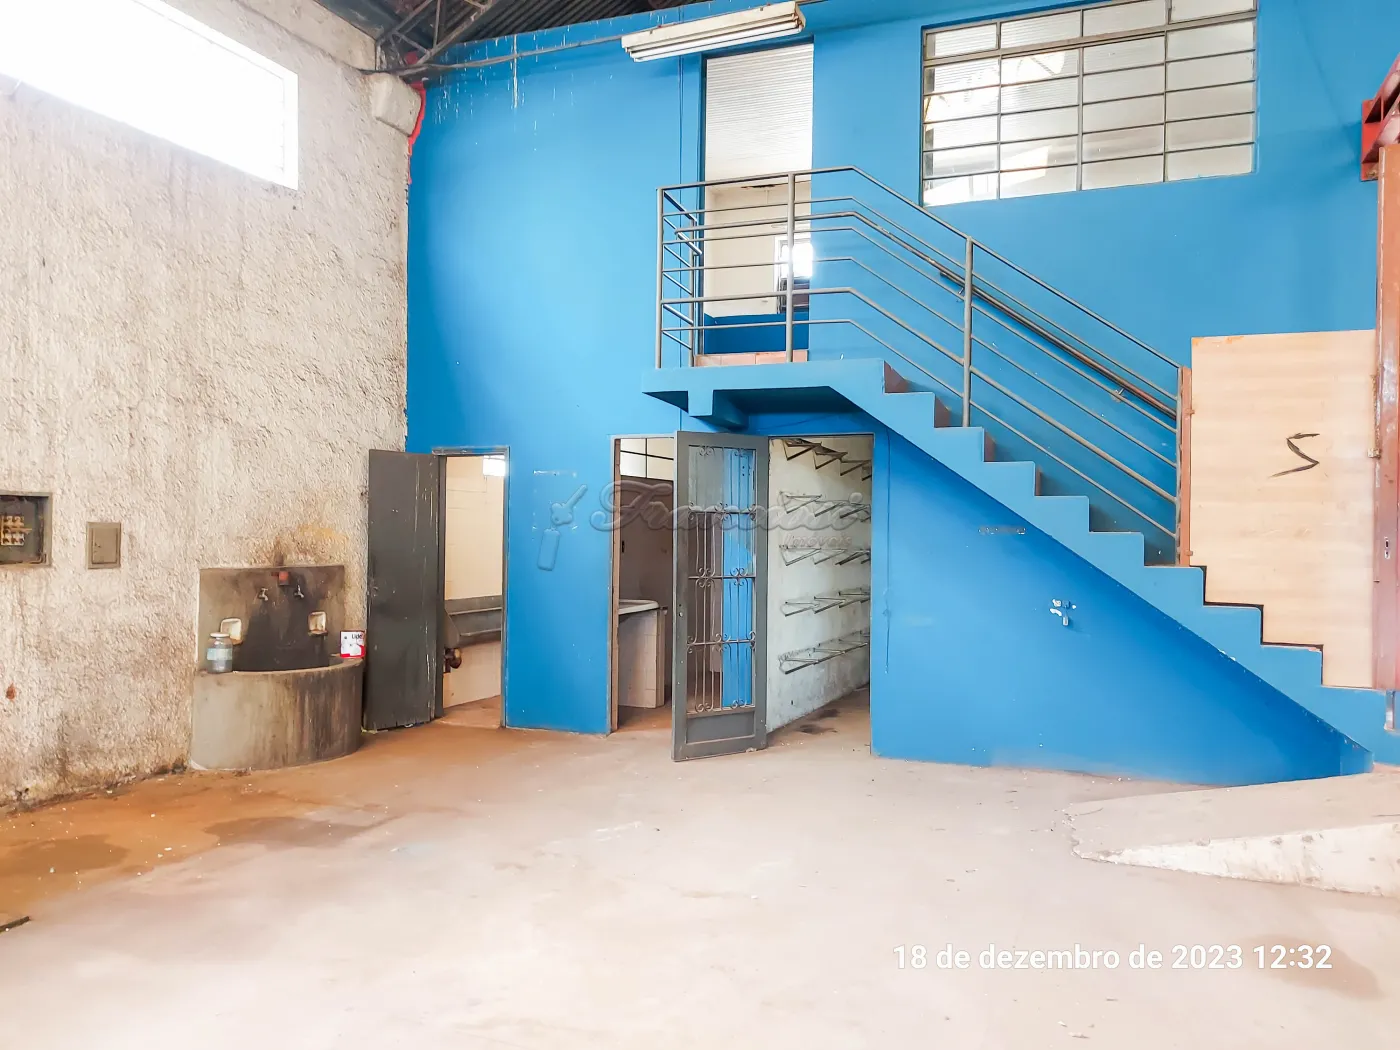 Barracão medindo aproximadamente 560 m², escritório, cozinha e 2 banheiros.